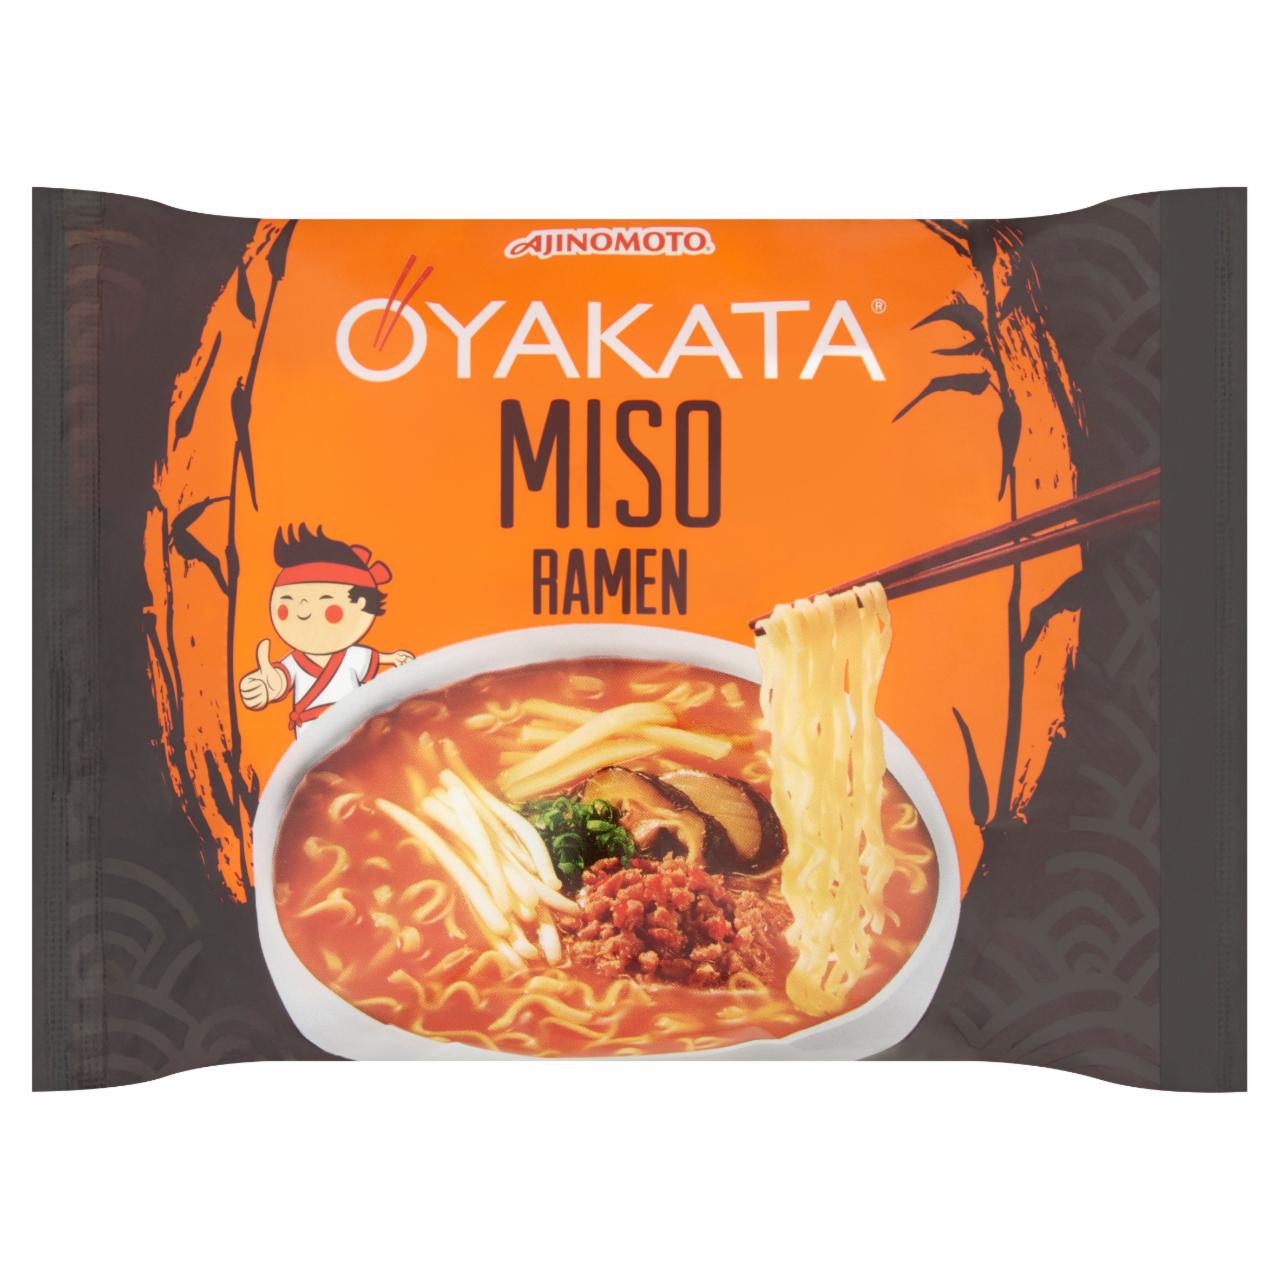 Képek - Oyakata instant japán tésztaleves Miso szójapaszta ízesítéssel 89 g